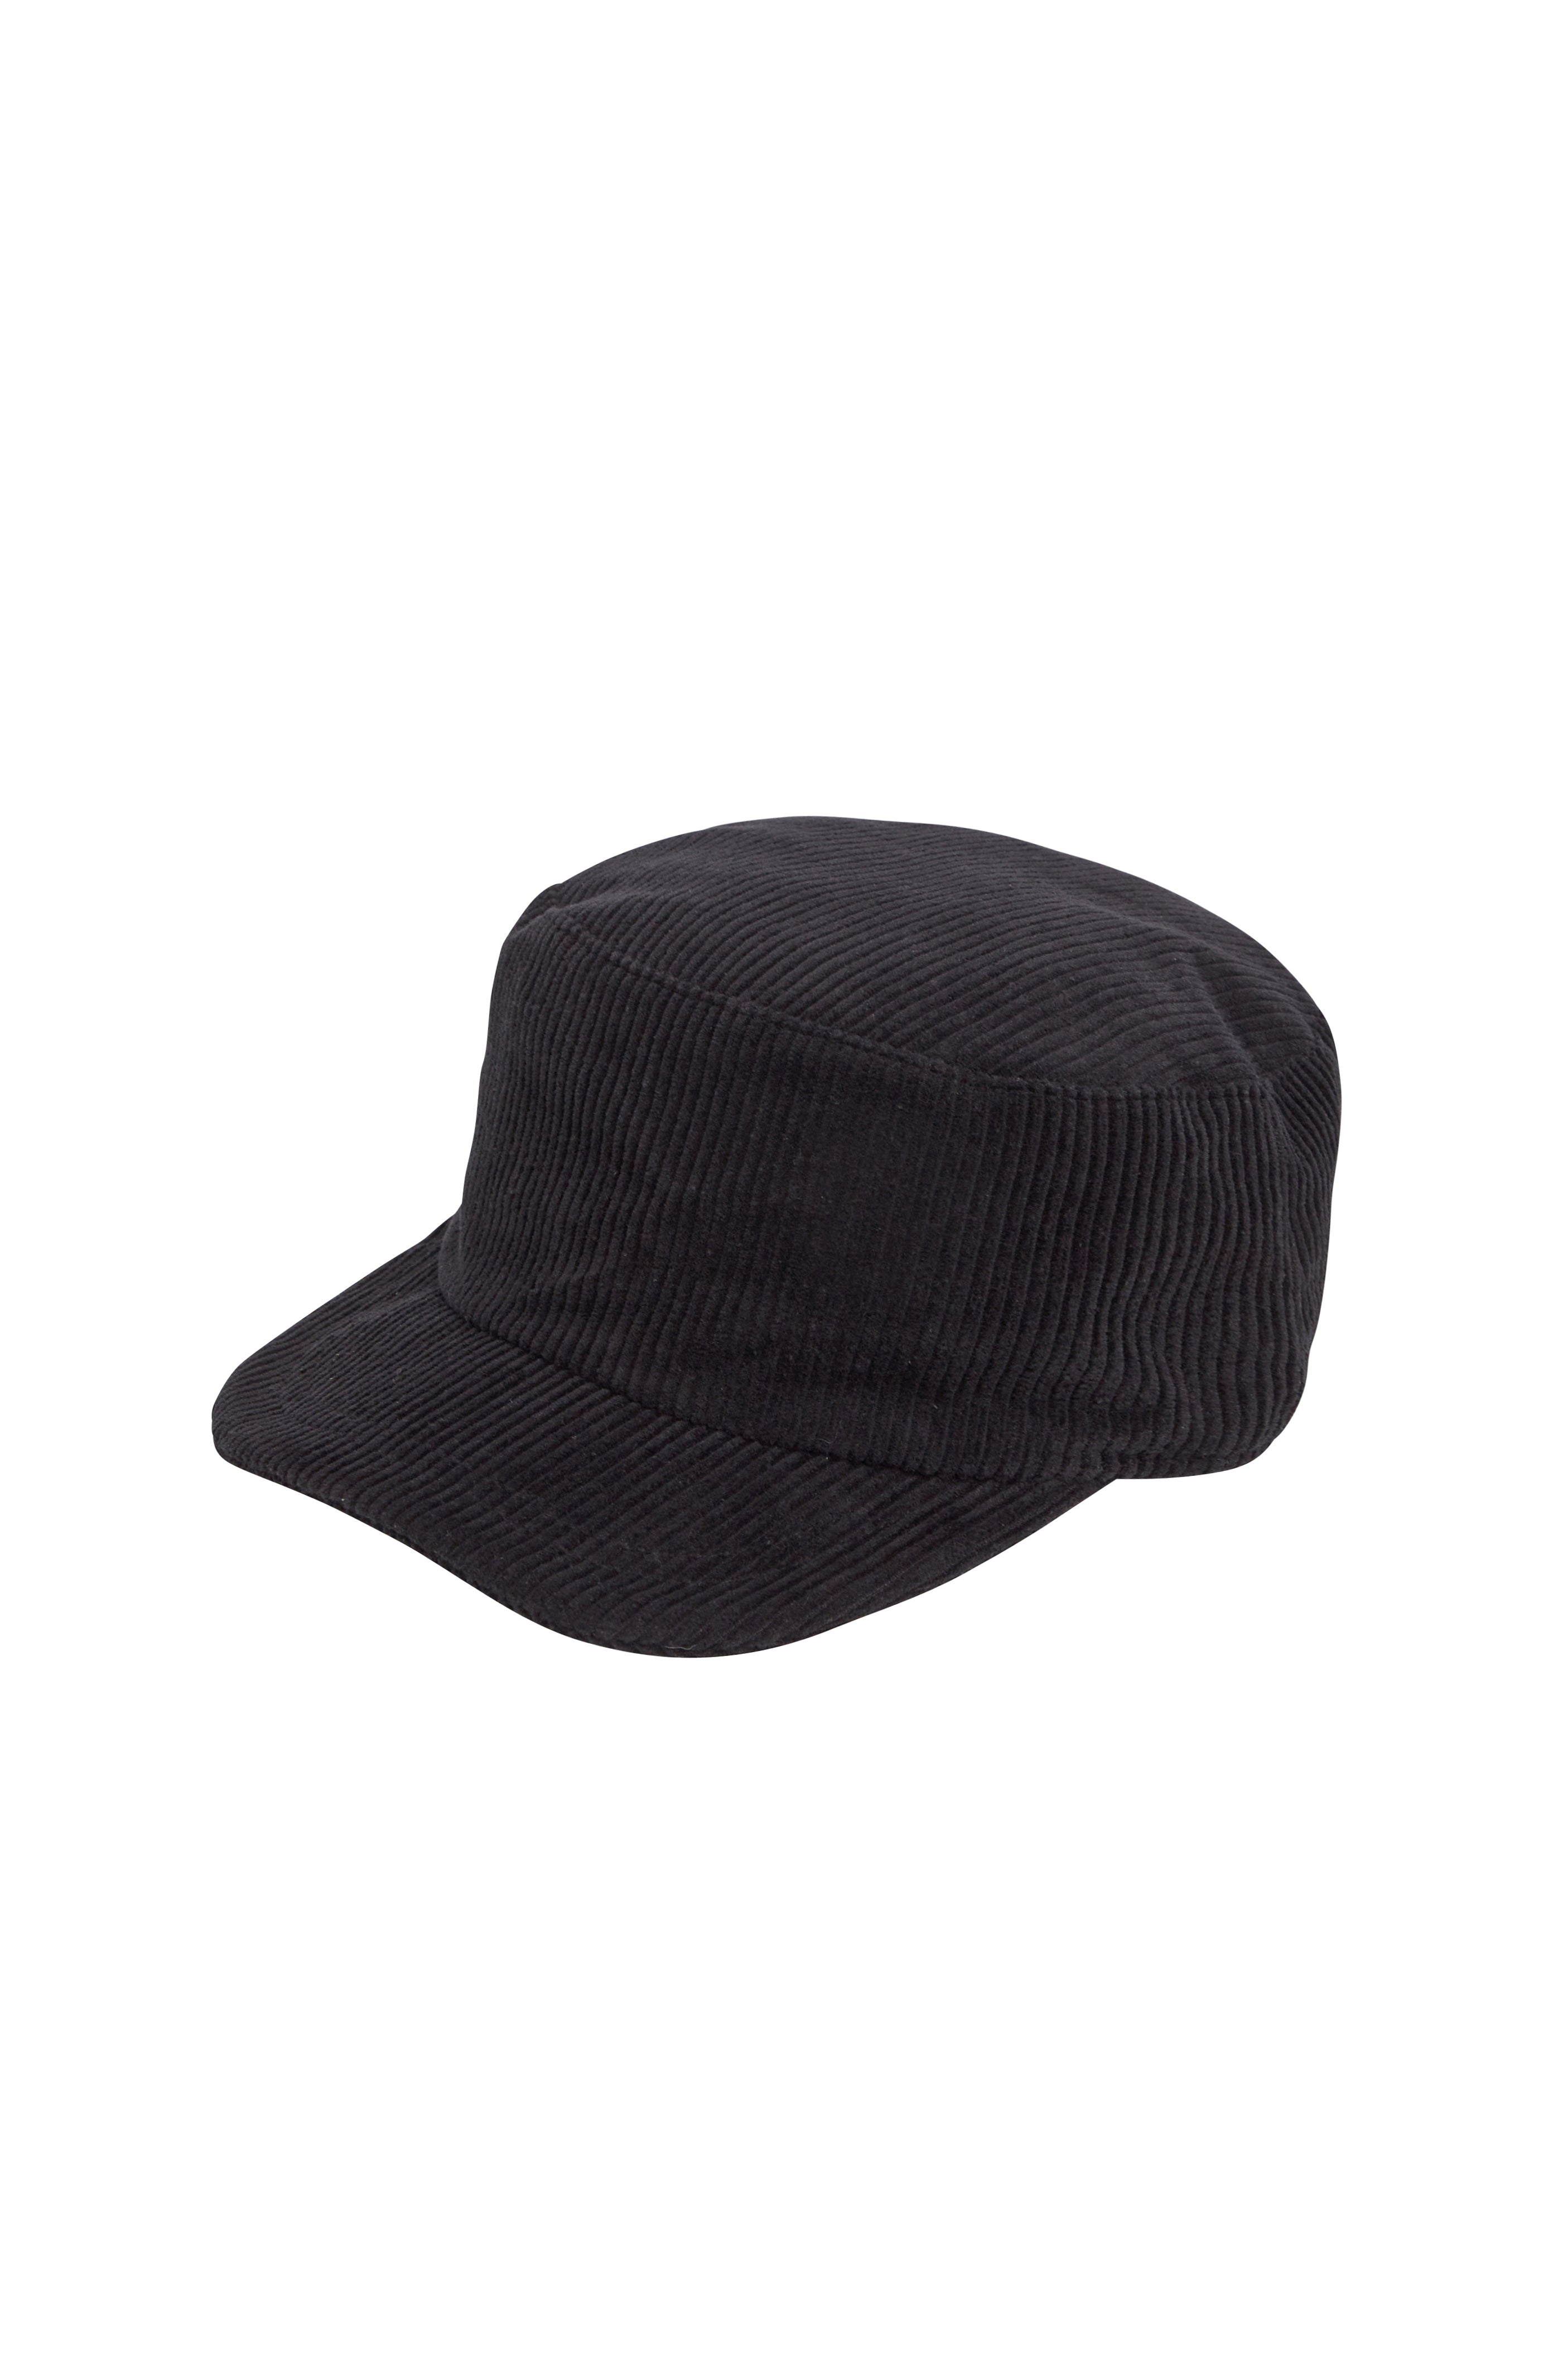 KEPI CORDUROY HAT / BLACK